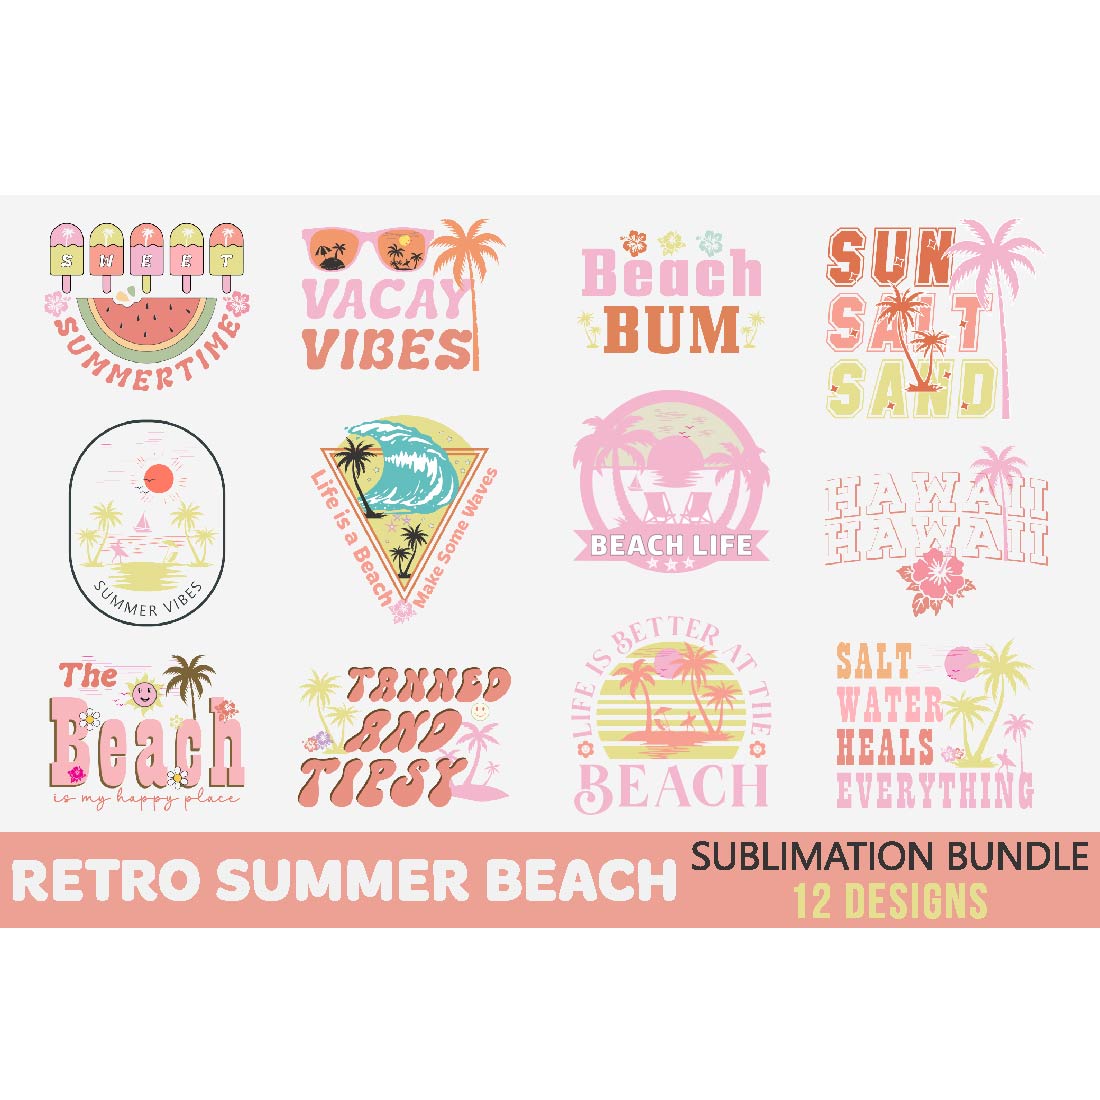 Retro Summer Sublimation Bundle preview image.